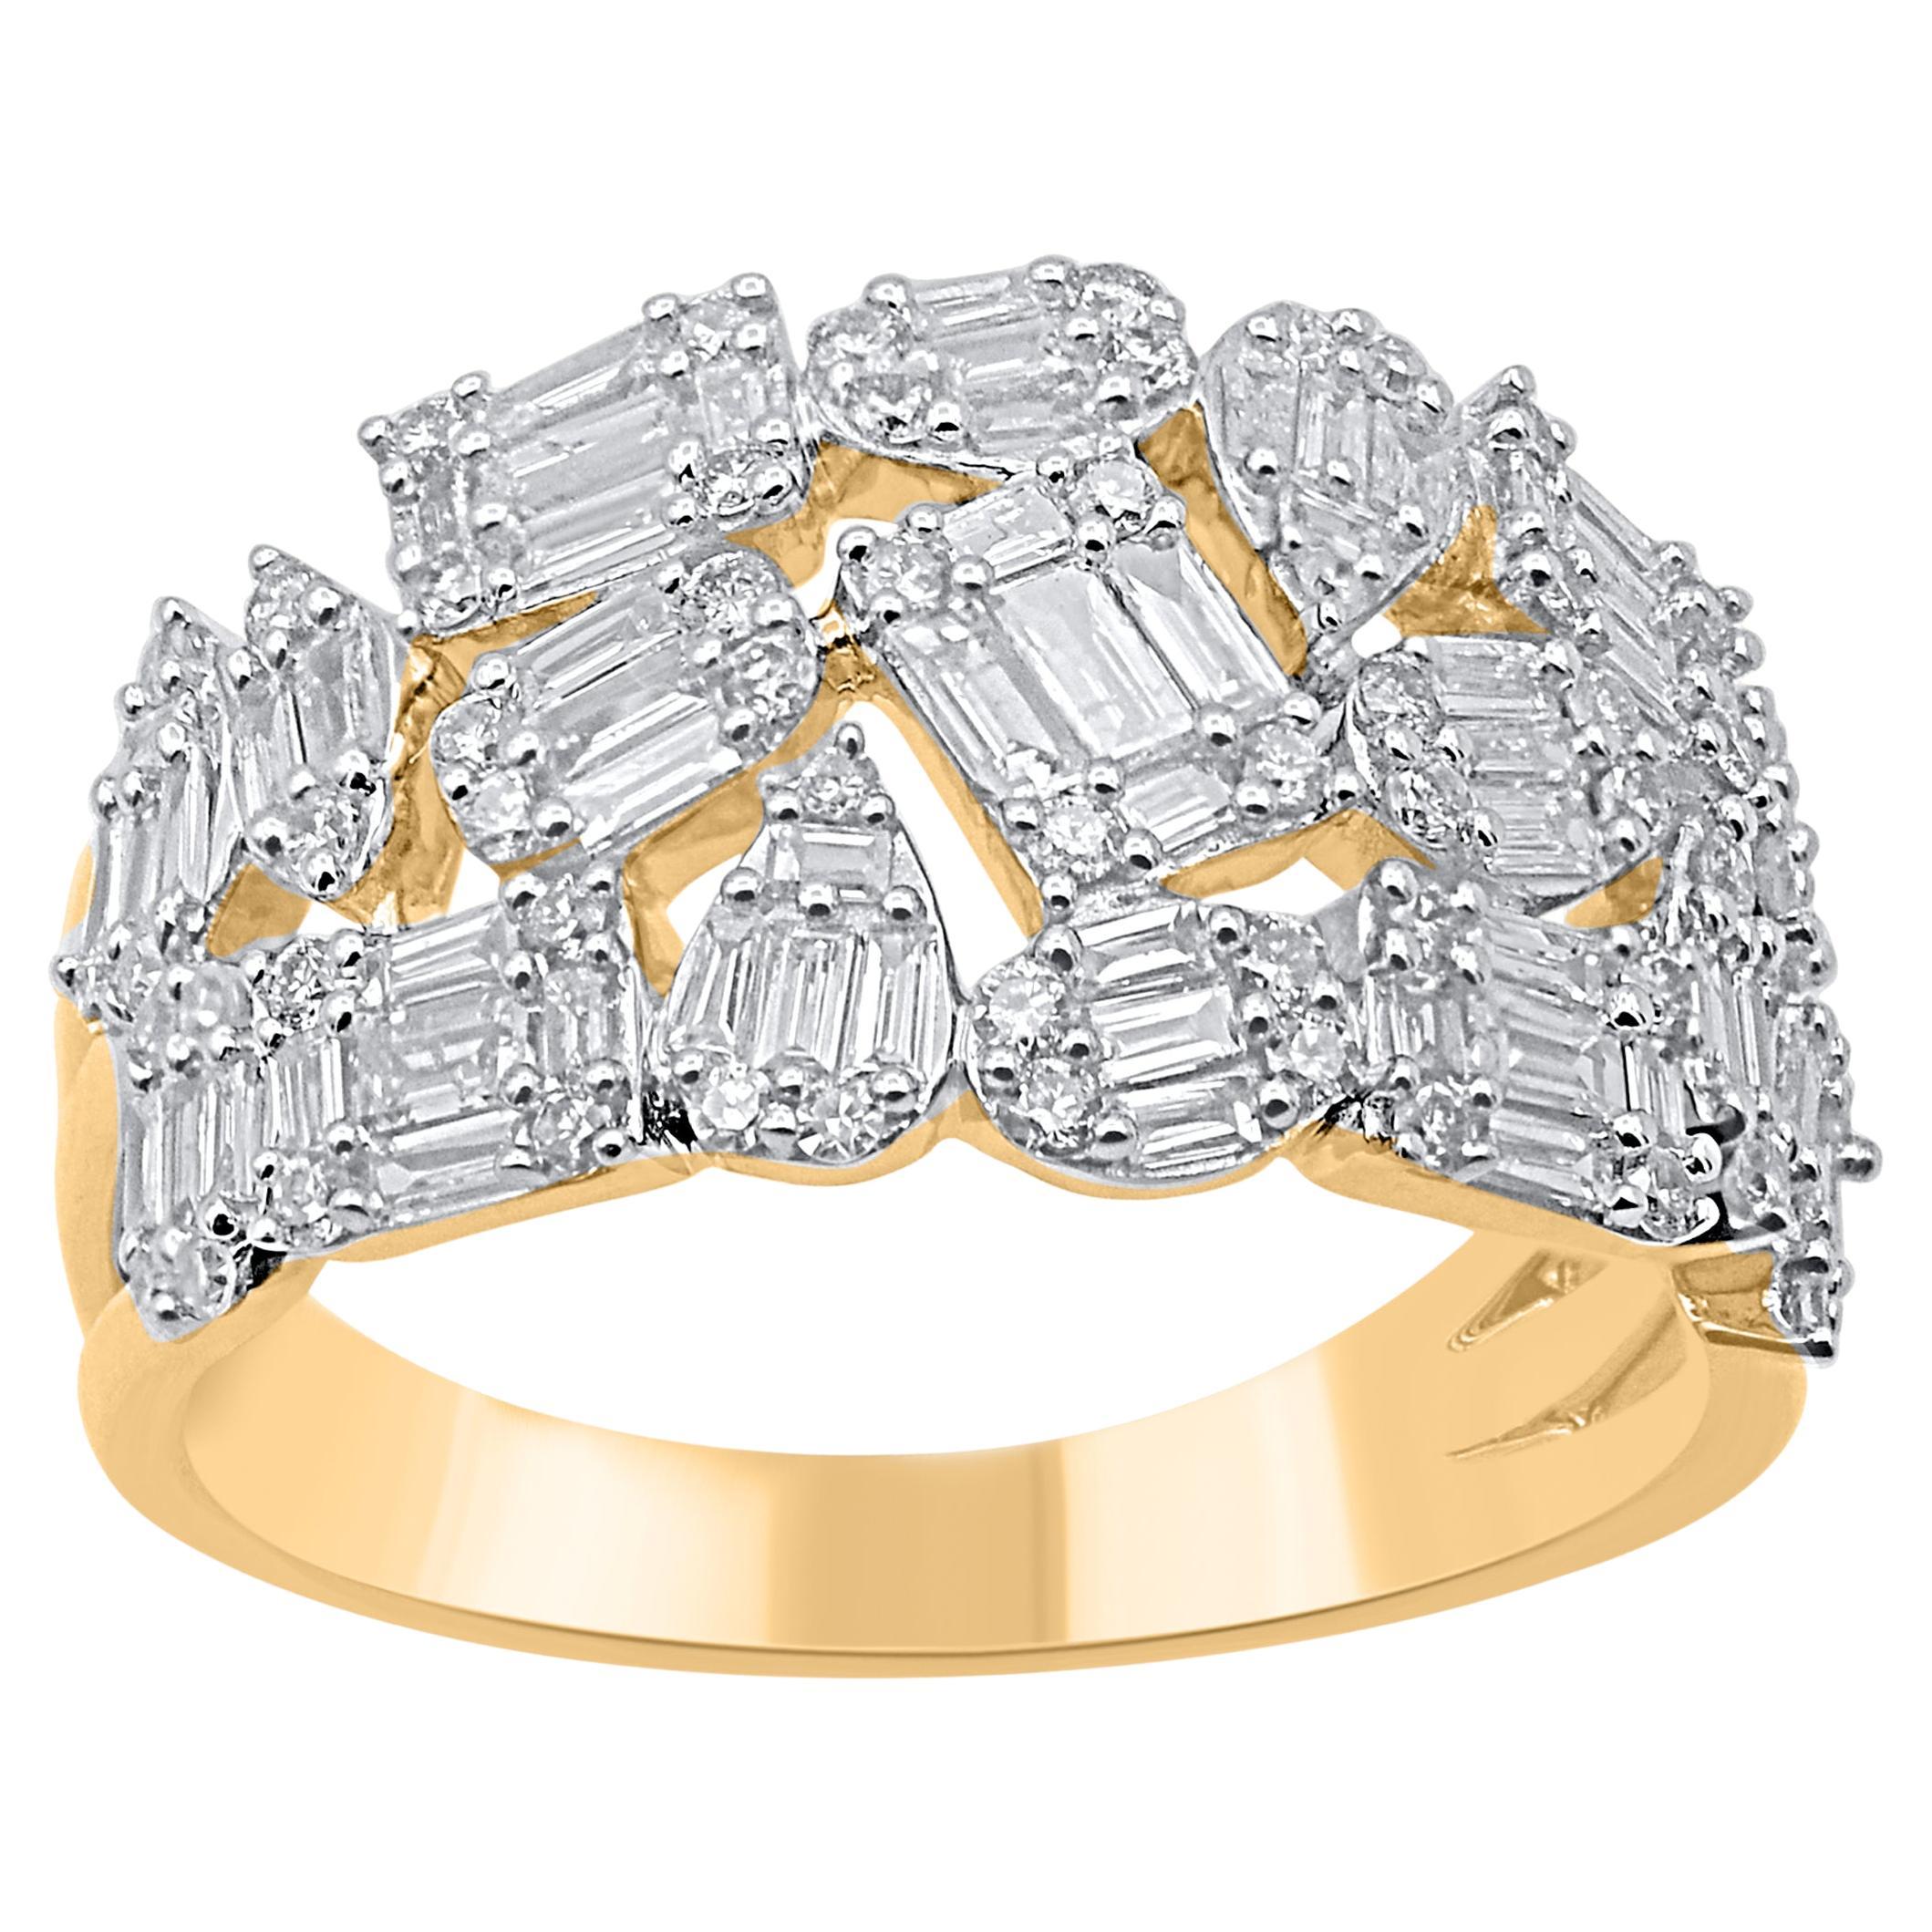 TJD 1.00 Carat Round and Baguette Diamond 14 Karat Yellow Gold Wedding Band Ring